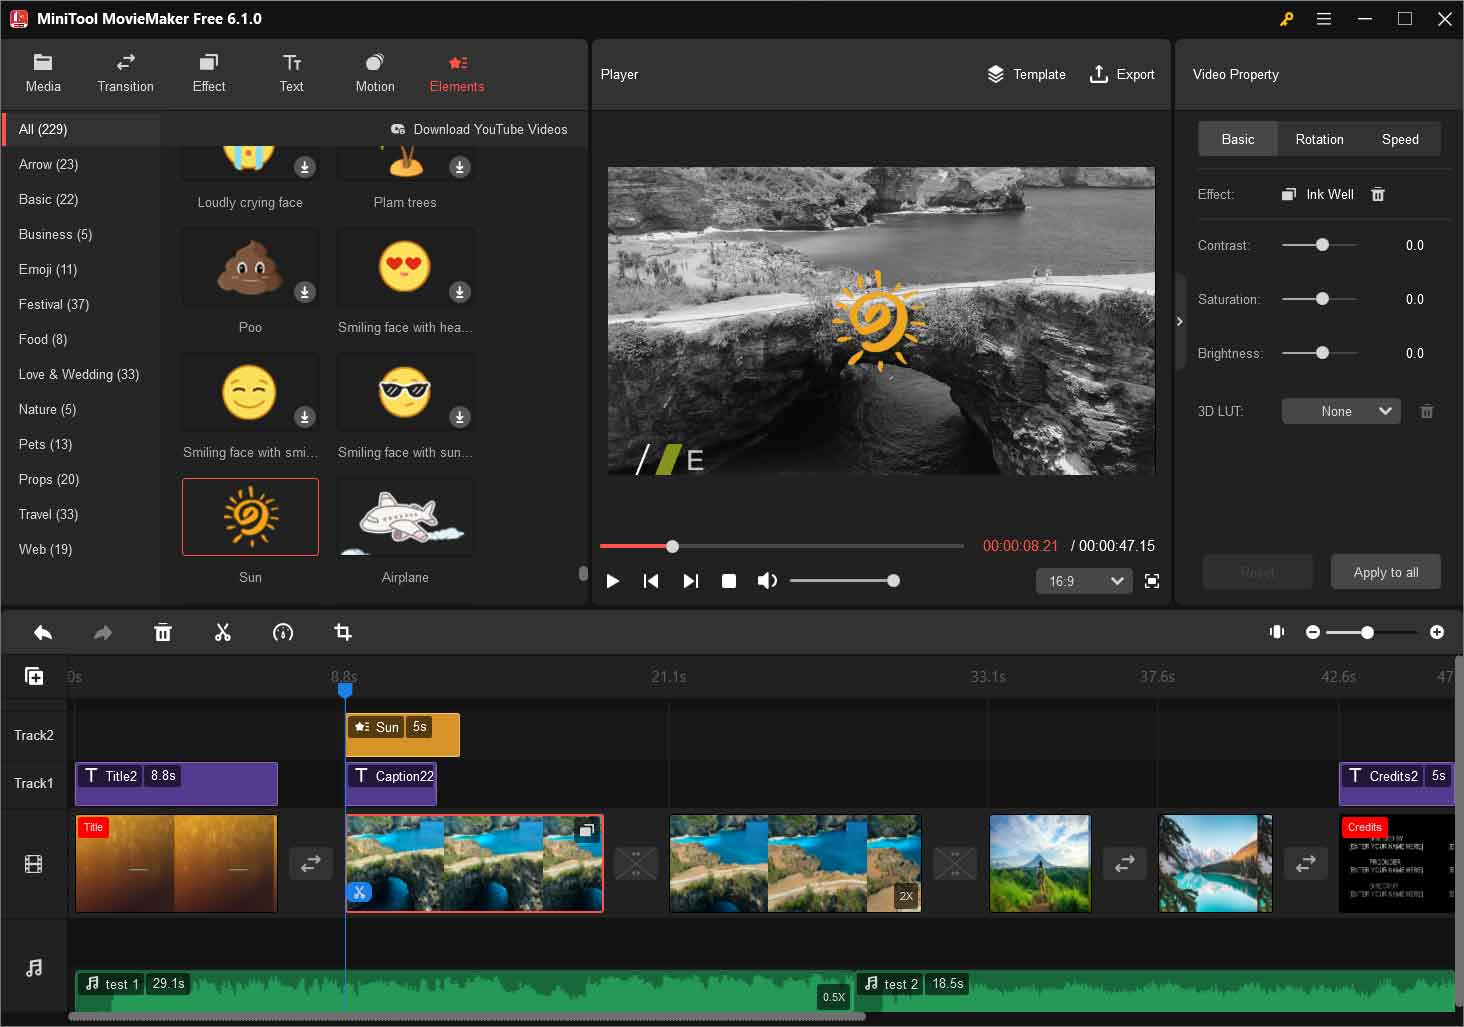 1080p-Videos mit MiniTool MovieMaker bearbeiten